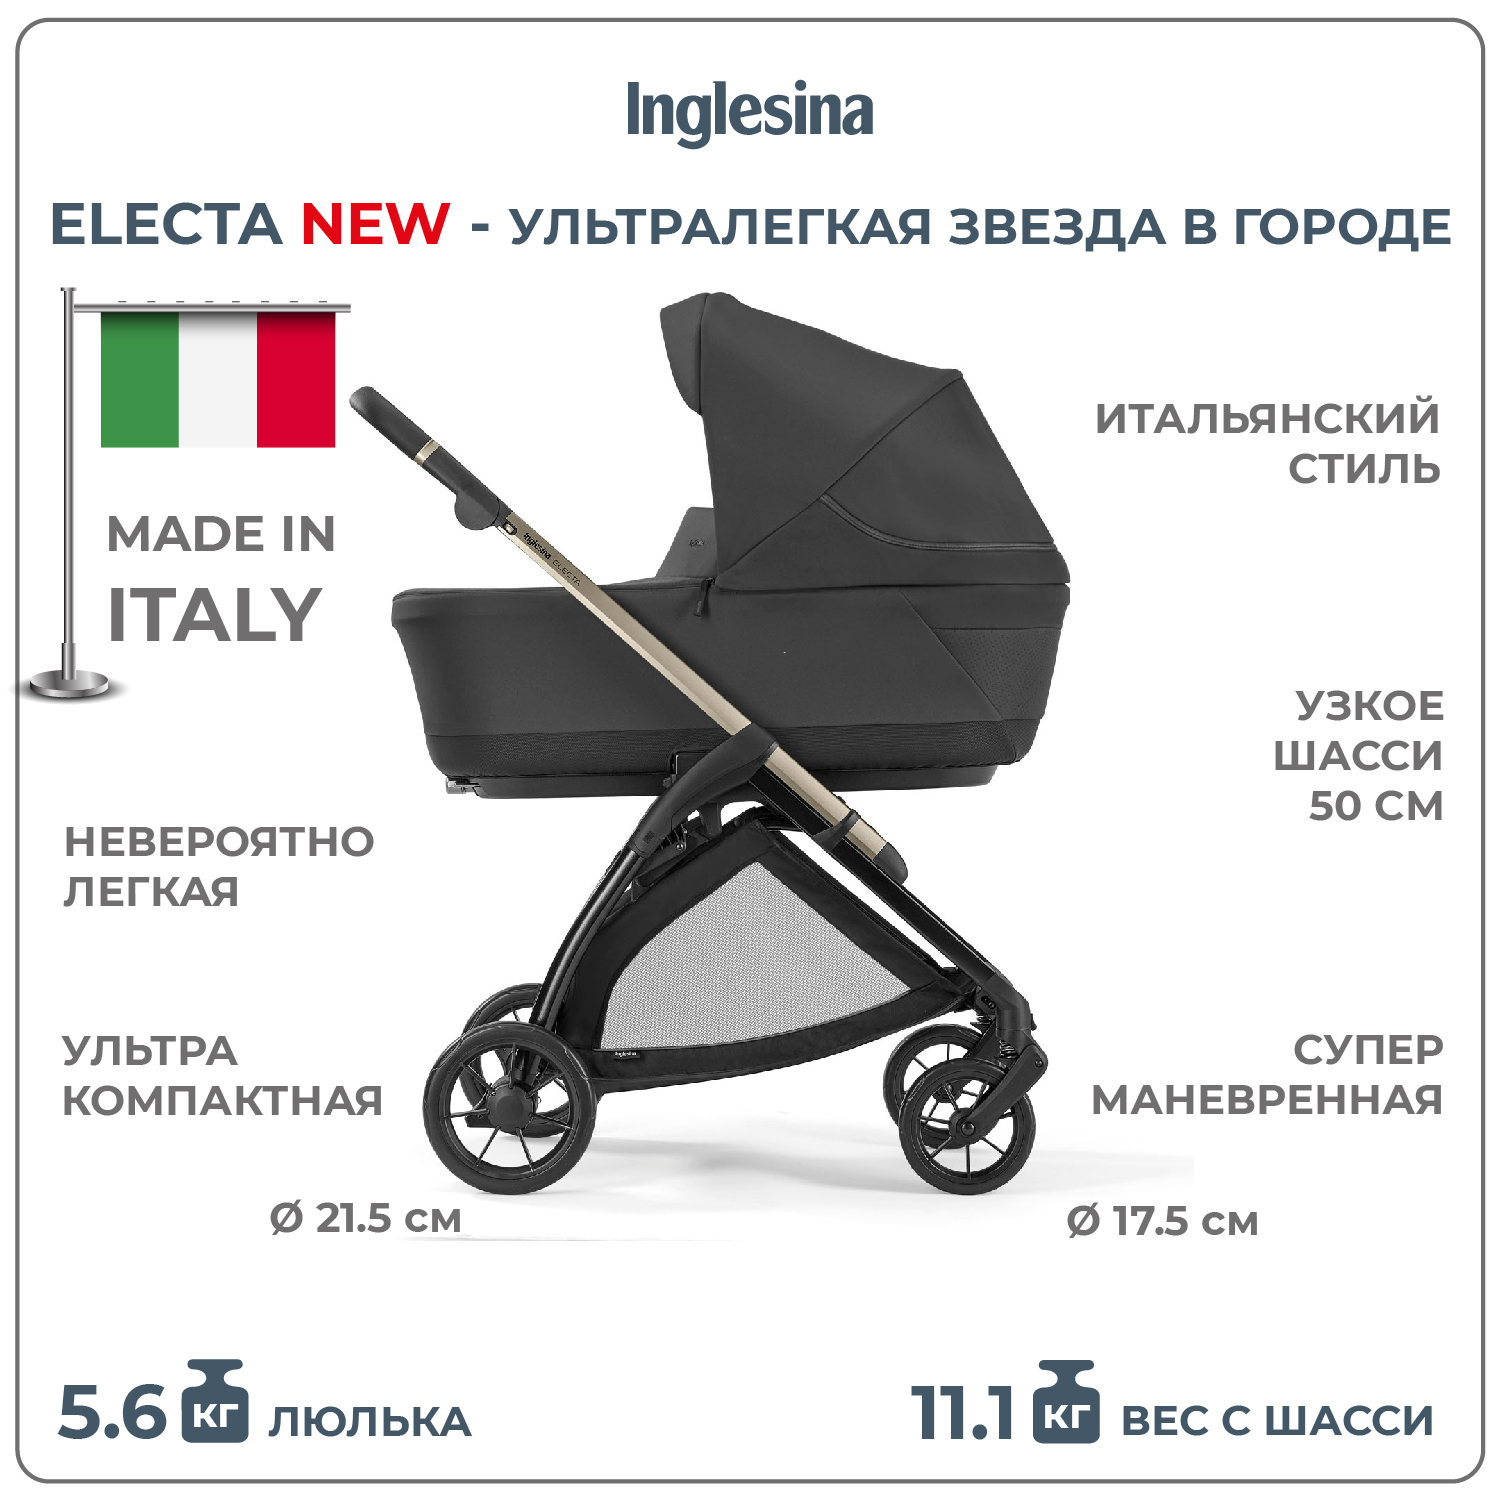 Коляска 3 в 1 i-Size Inglesina Electa New с подставкой под люльку Standup, Upper Black